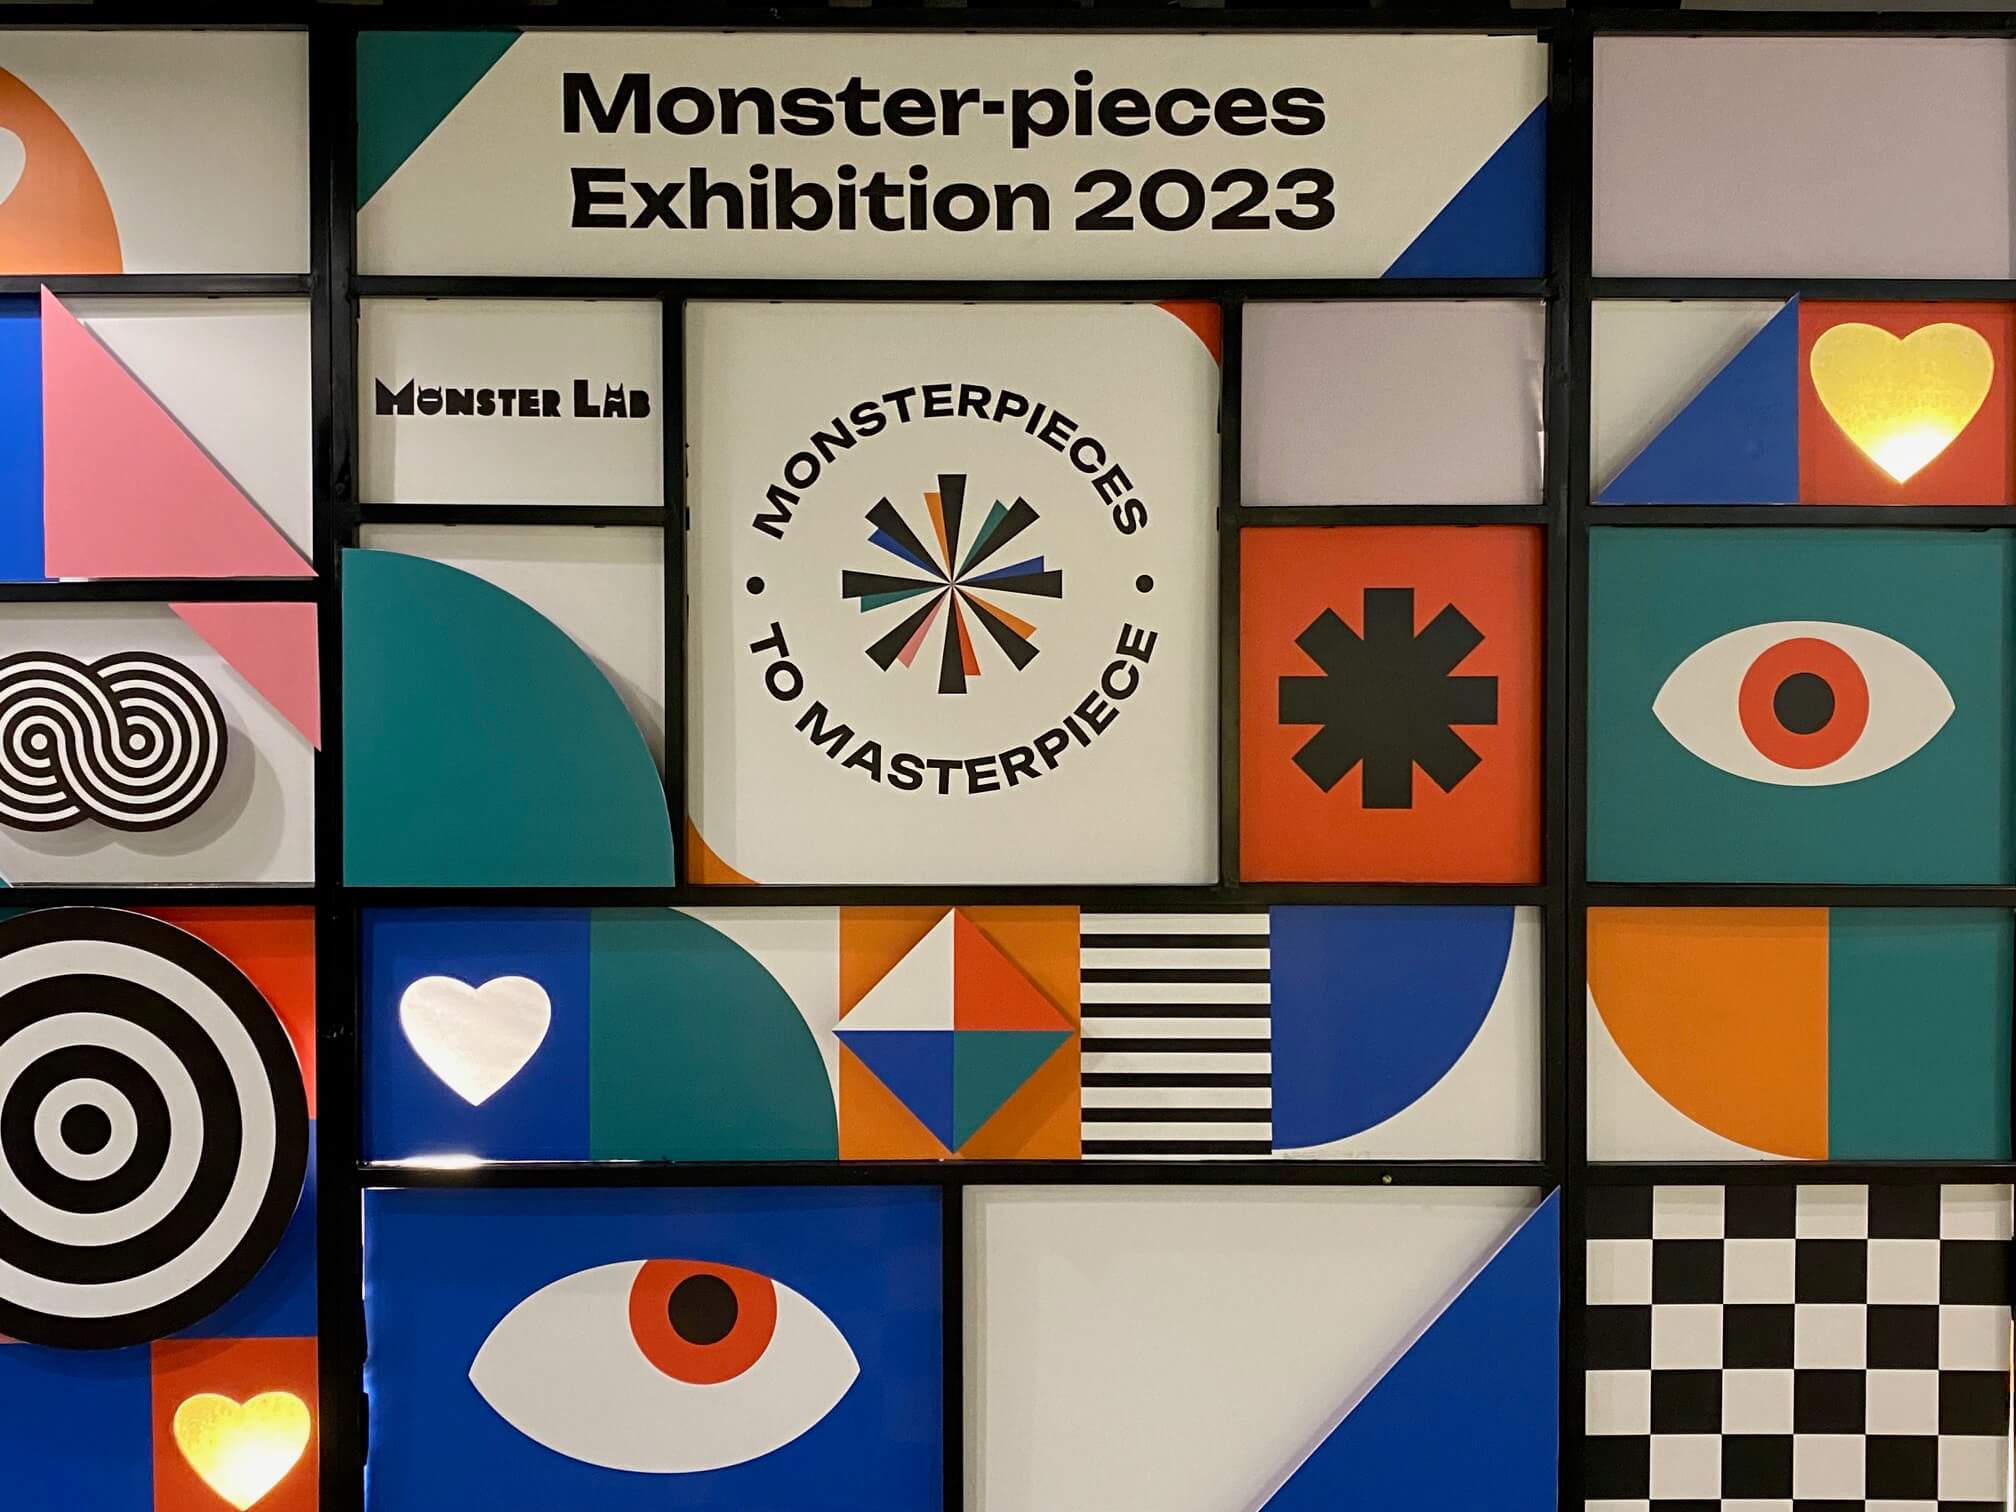 /ai đi/ Triển lãm sinh viên Monster Lab 2023: Chiêm ngưỡng tác phẩm đến từ các mầm non thiết kế